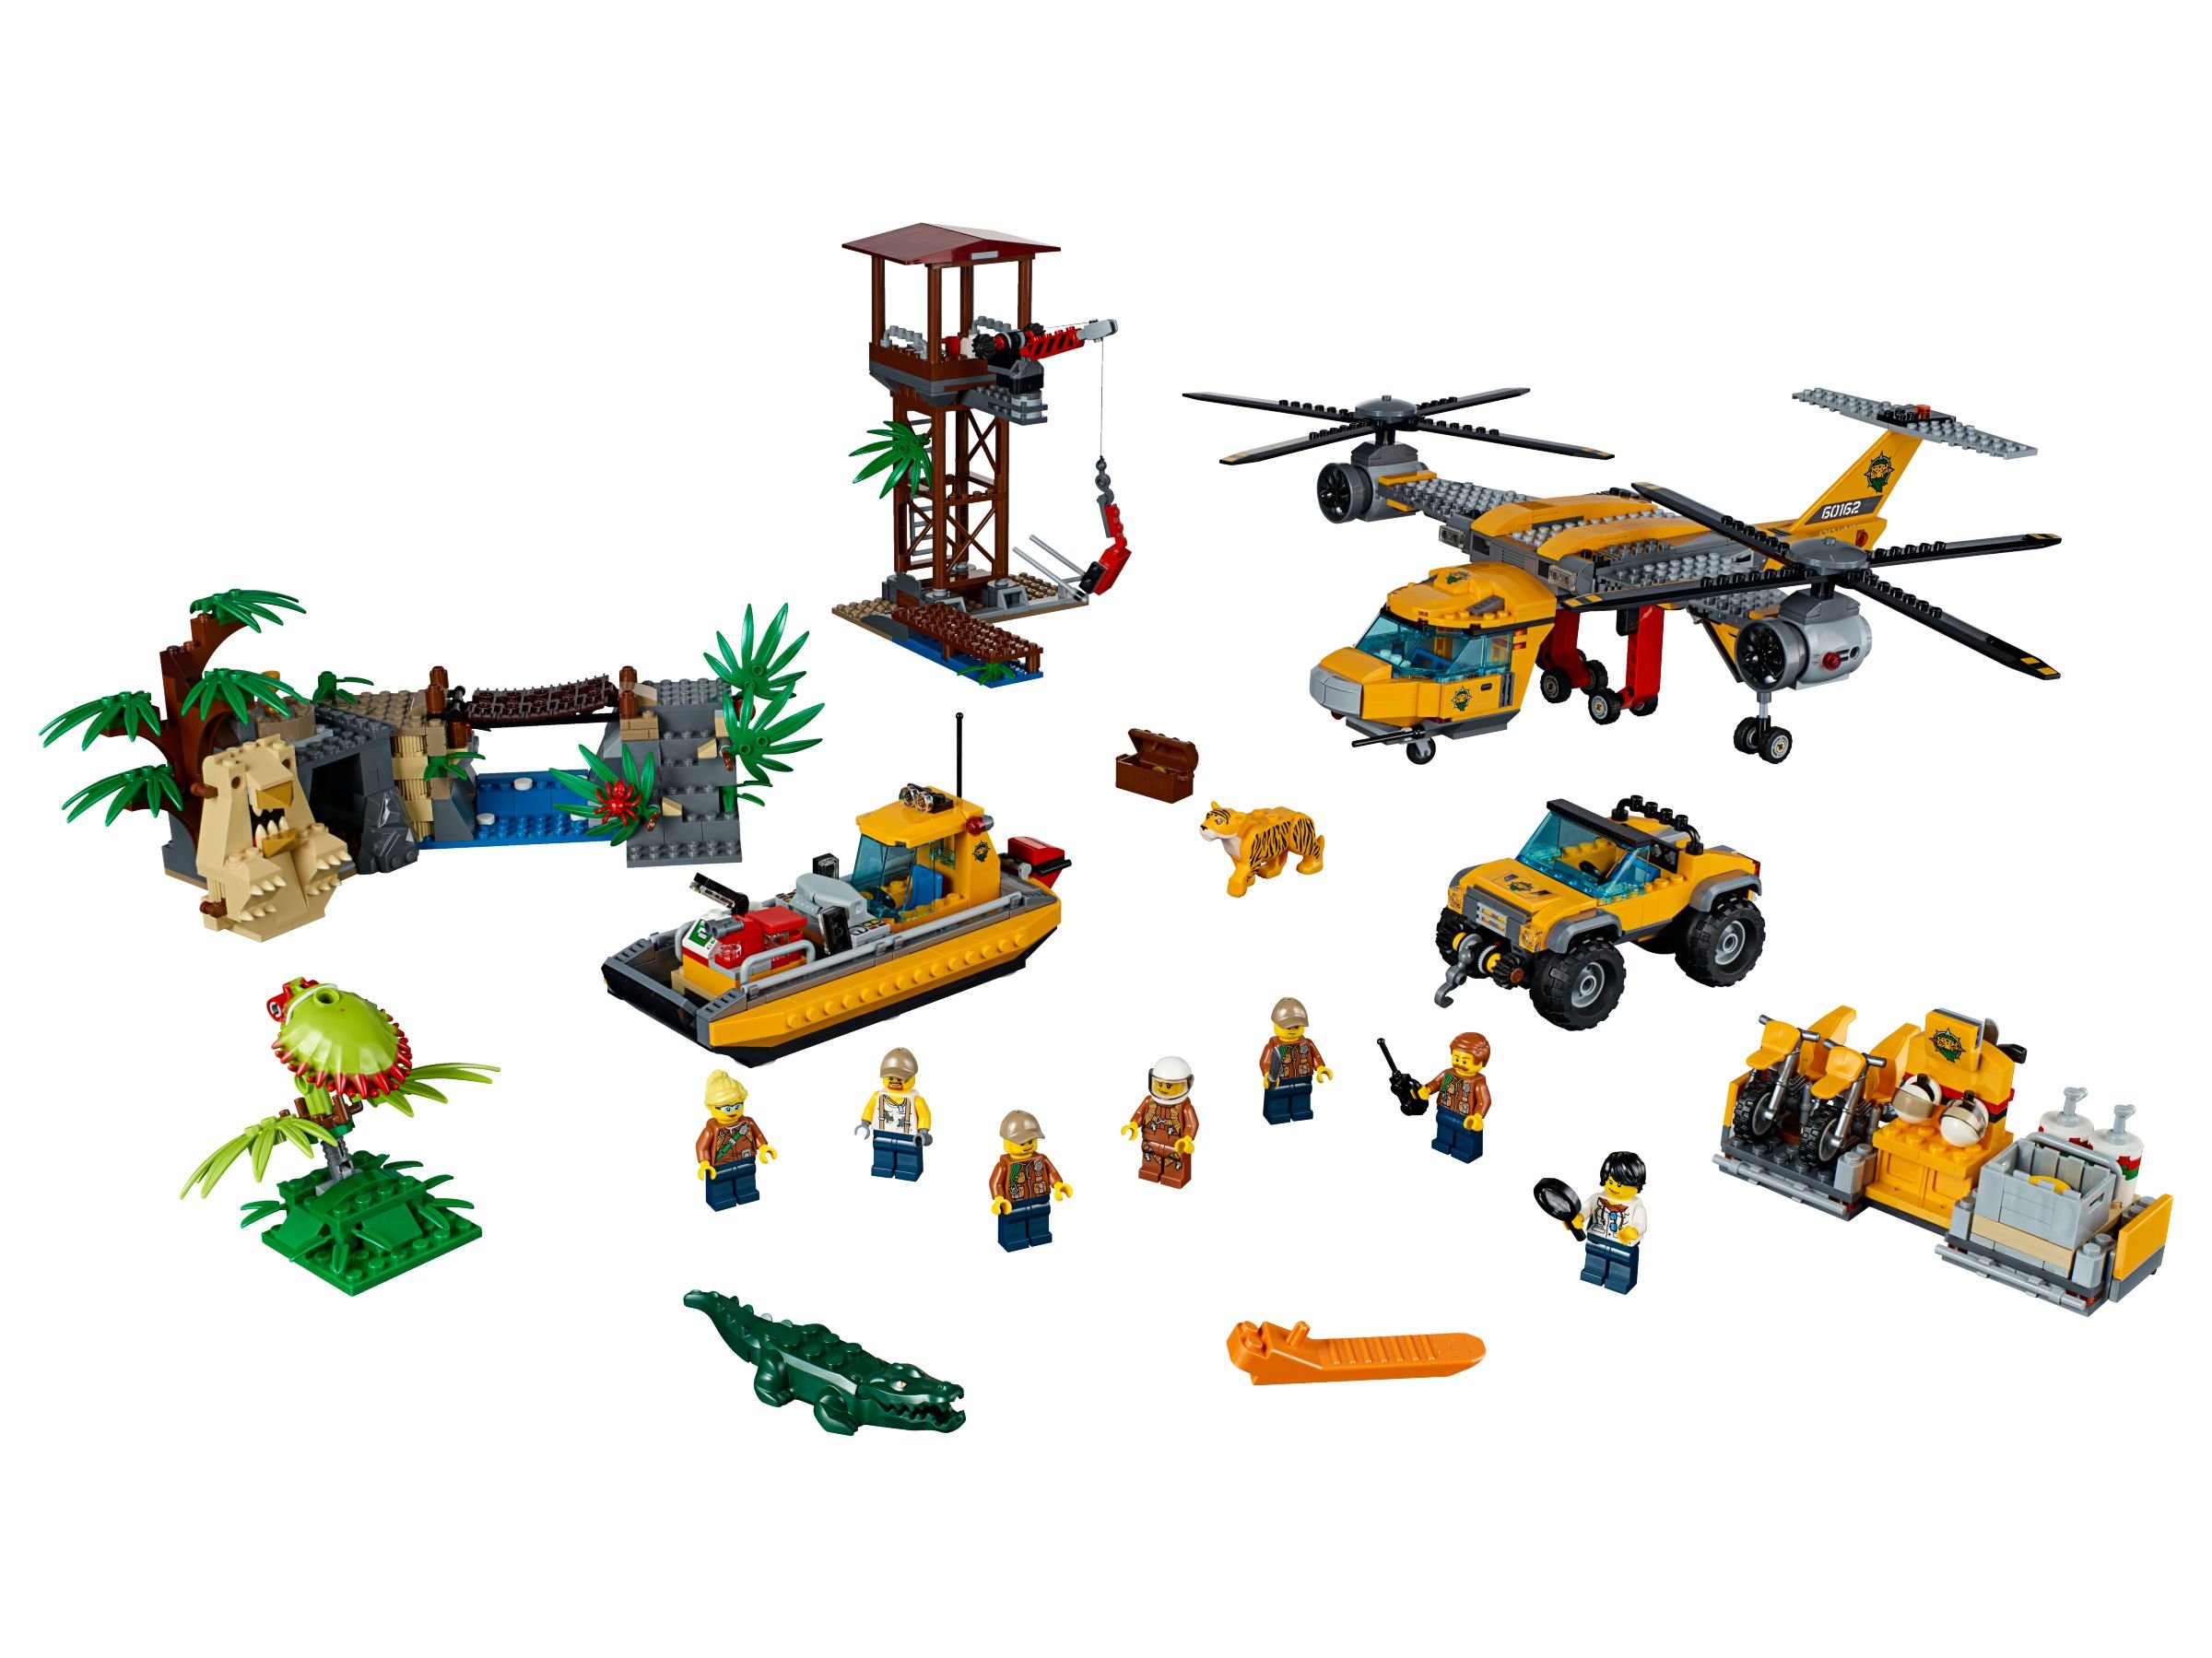 LEGO City 60162 Dschungel-Versorgungshubschrauber LEGO_60162.jpg